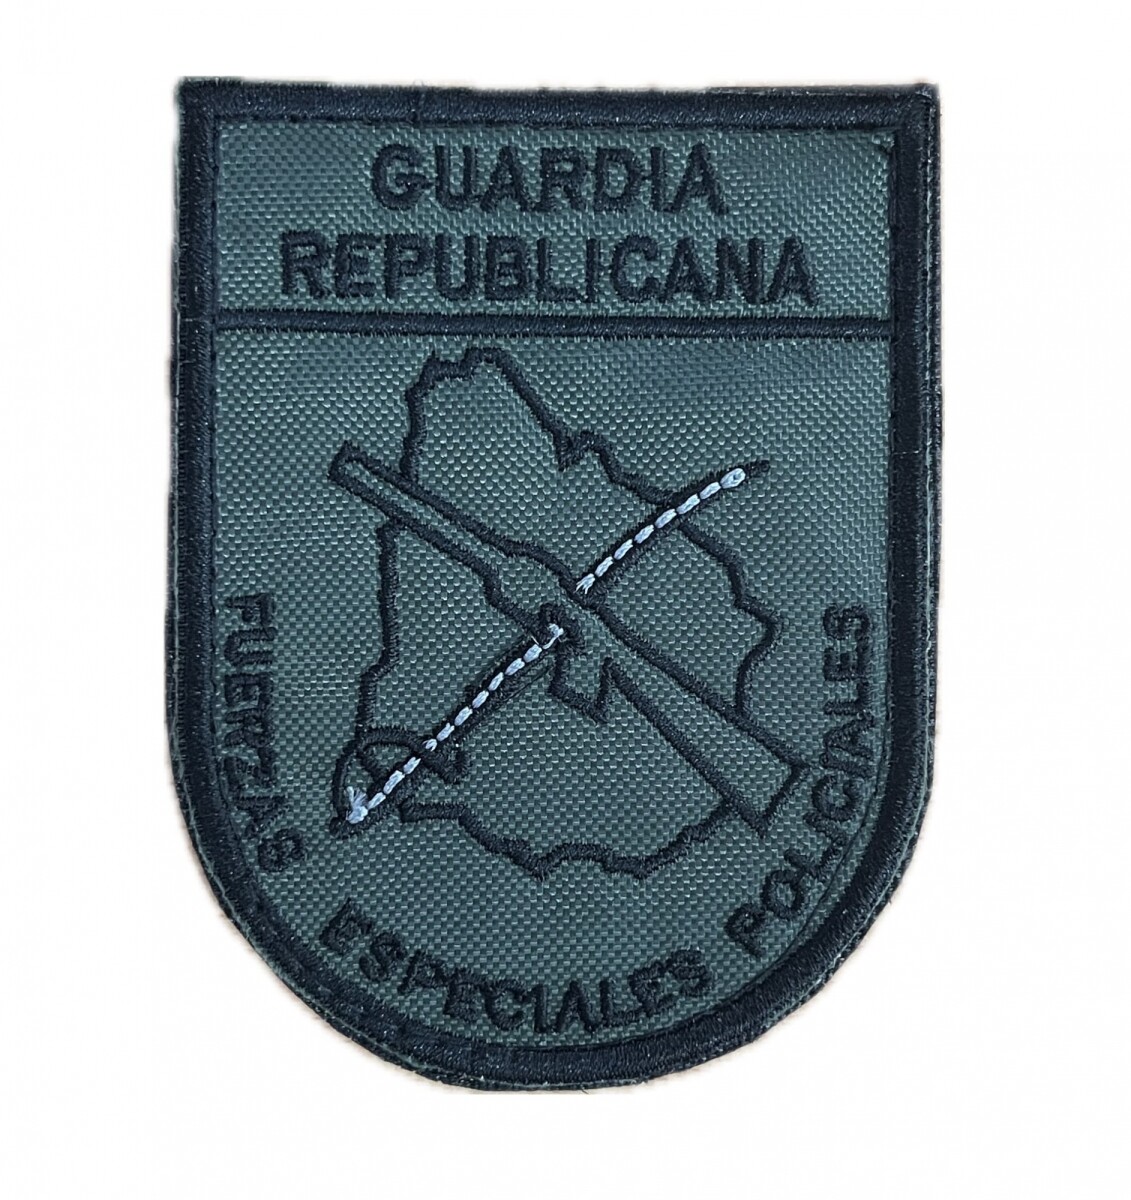 Parche Guardia Republicana - Fuerzas Especiales Policiales - Verde negro 